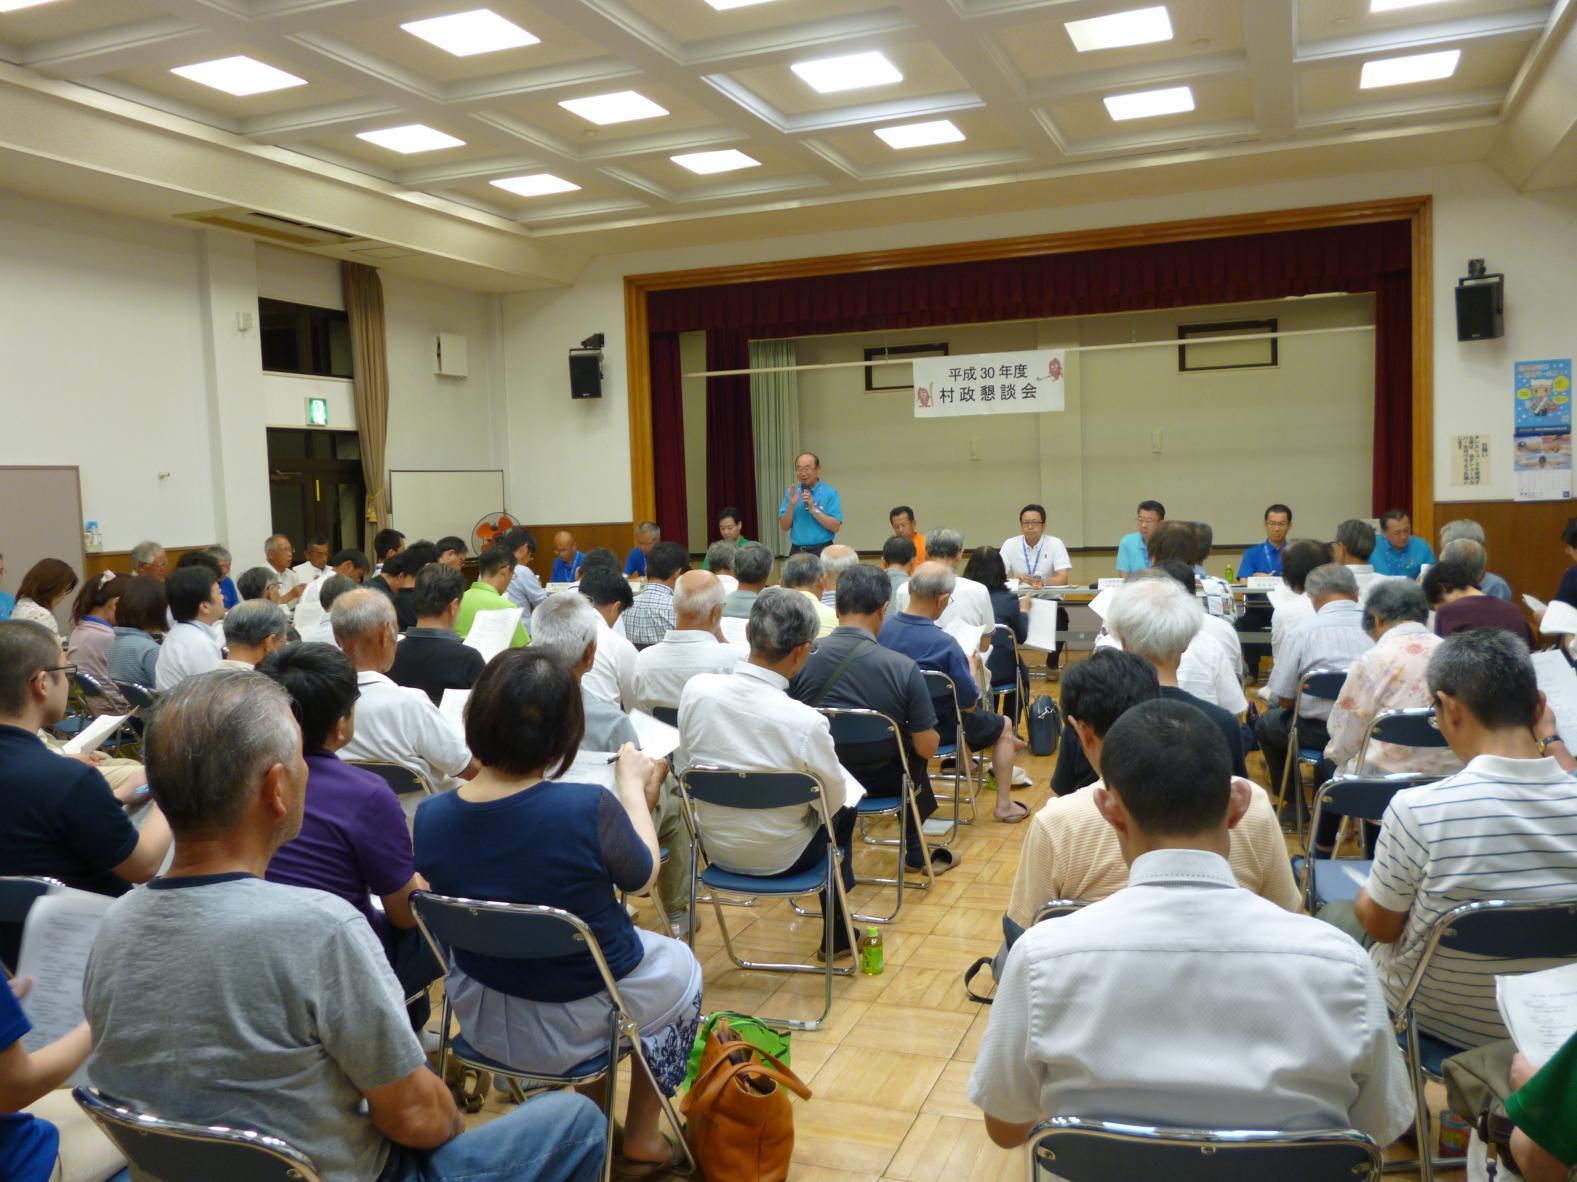 舟石川コミュニティセンターで行われた懇談会で、前方でマイクを持って話をしている男性と、着席し話を聞いている参加者たちの後方からの写真